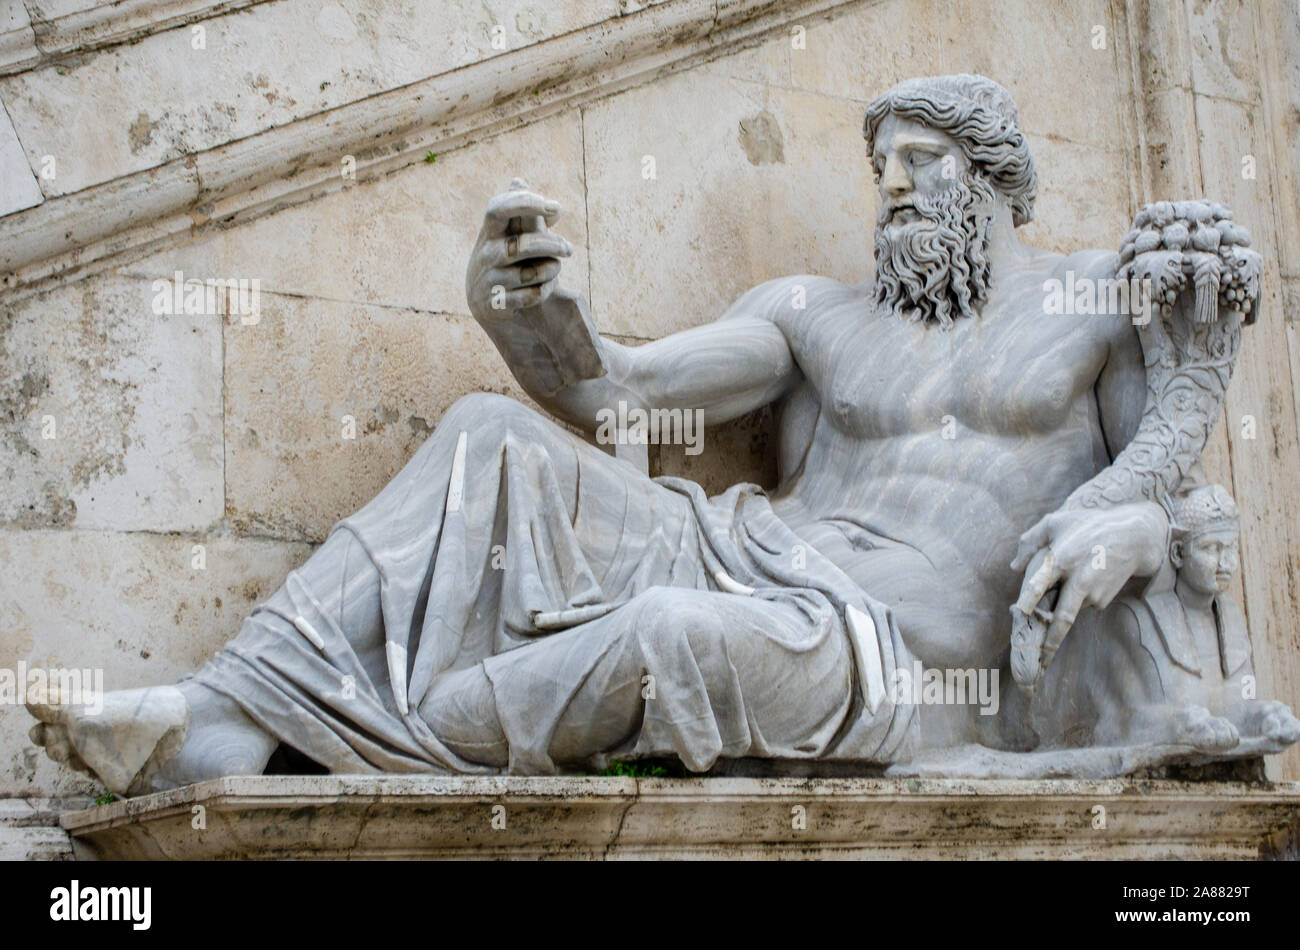 Statue des römischen Gott Zeus in Rom in Liegeposition posennnnn  Stockfotografie - Alamy